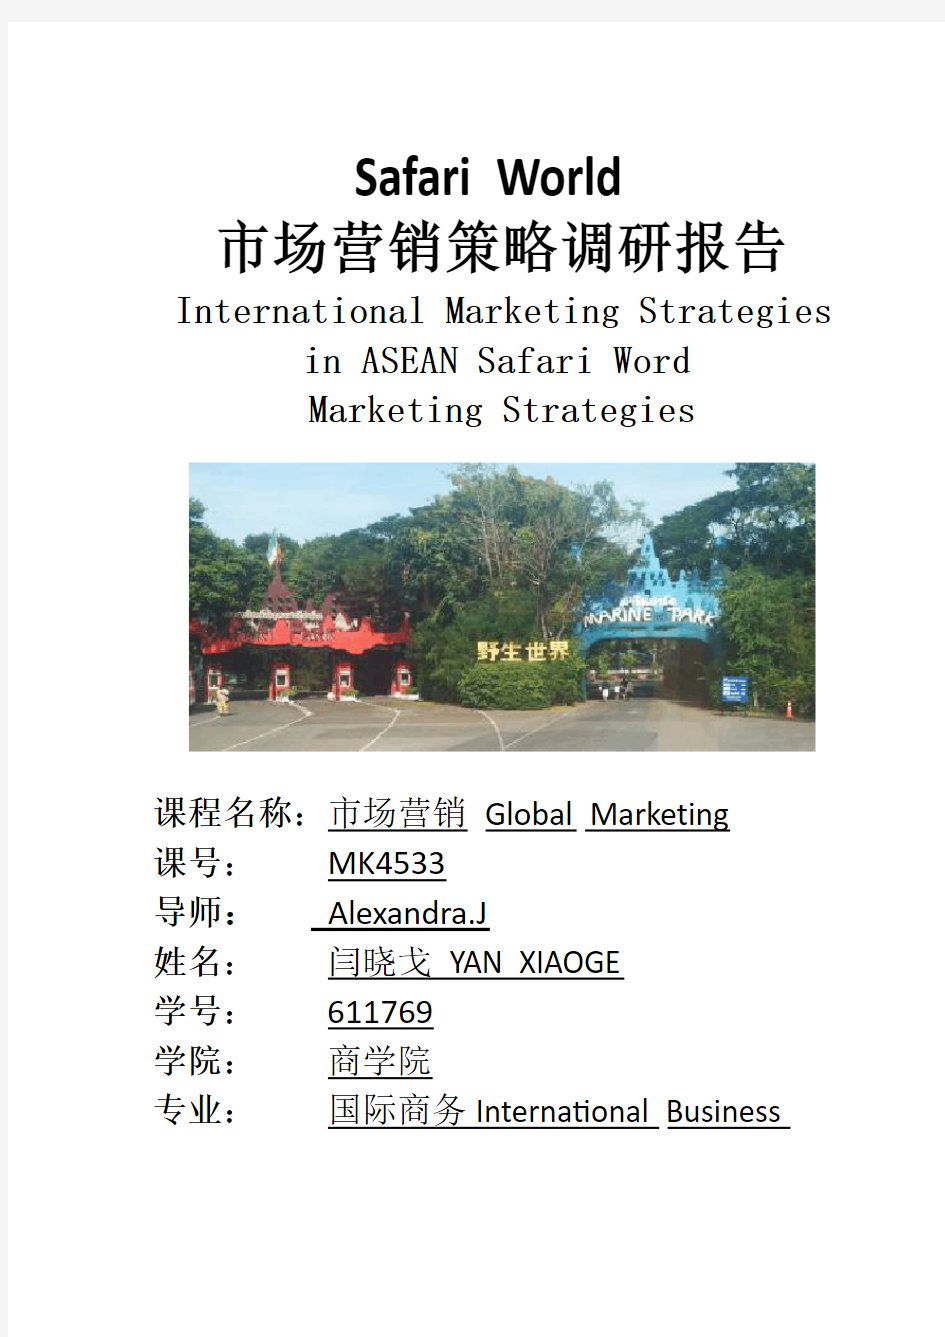 泰国曼谷Safari World市场营销报告